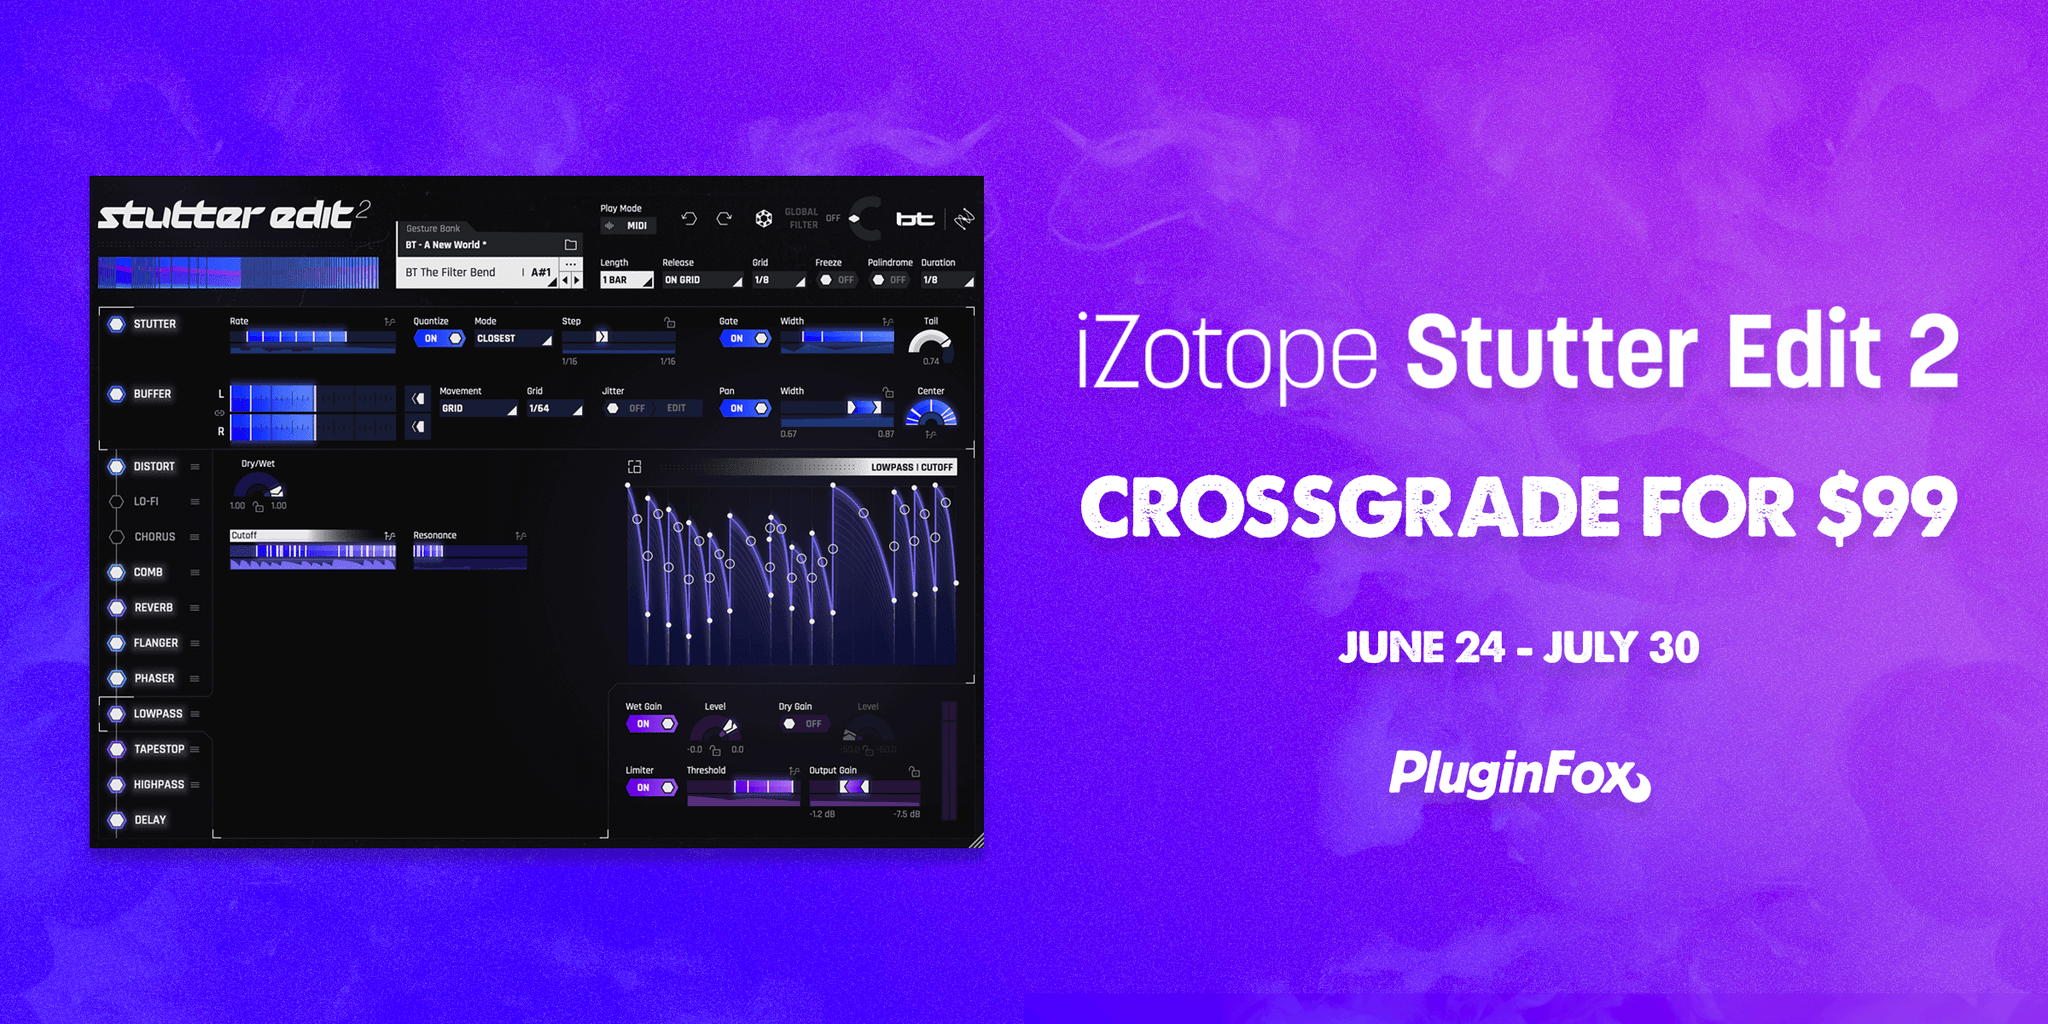 iZotope Stutter Edit 2 Launch Sale - June 24 - July 30